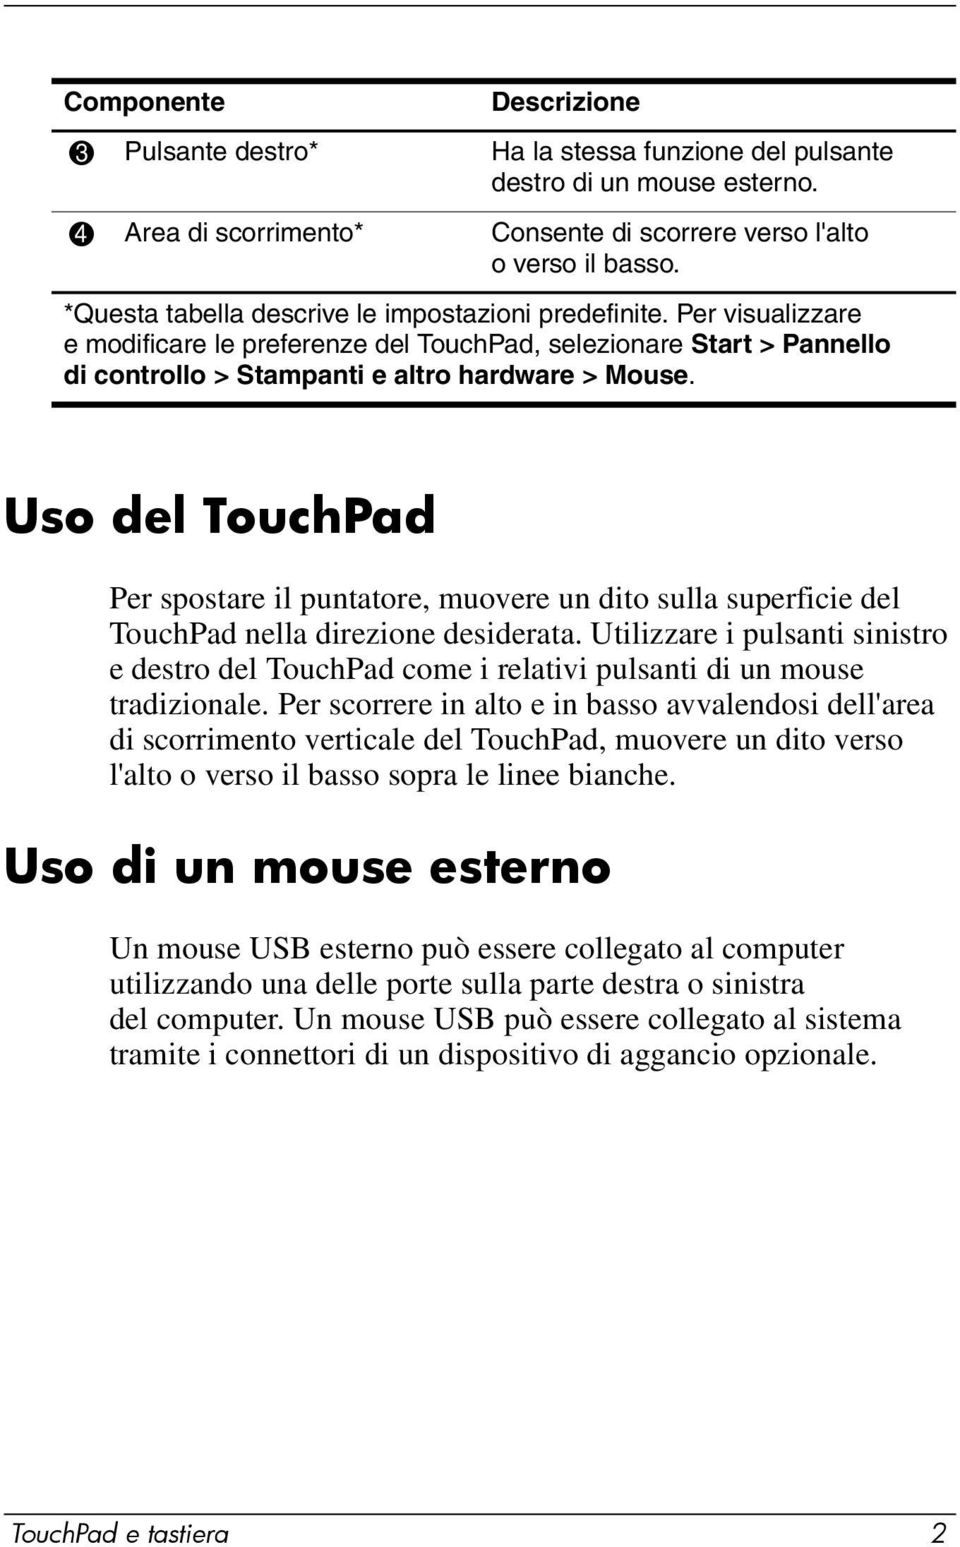 Uso del TouchPad Per spostare il puntatore, muovere un dito sulla superficie del TouchPad nella direzione desiderata.